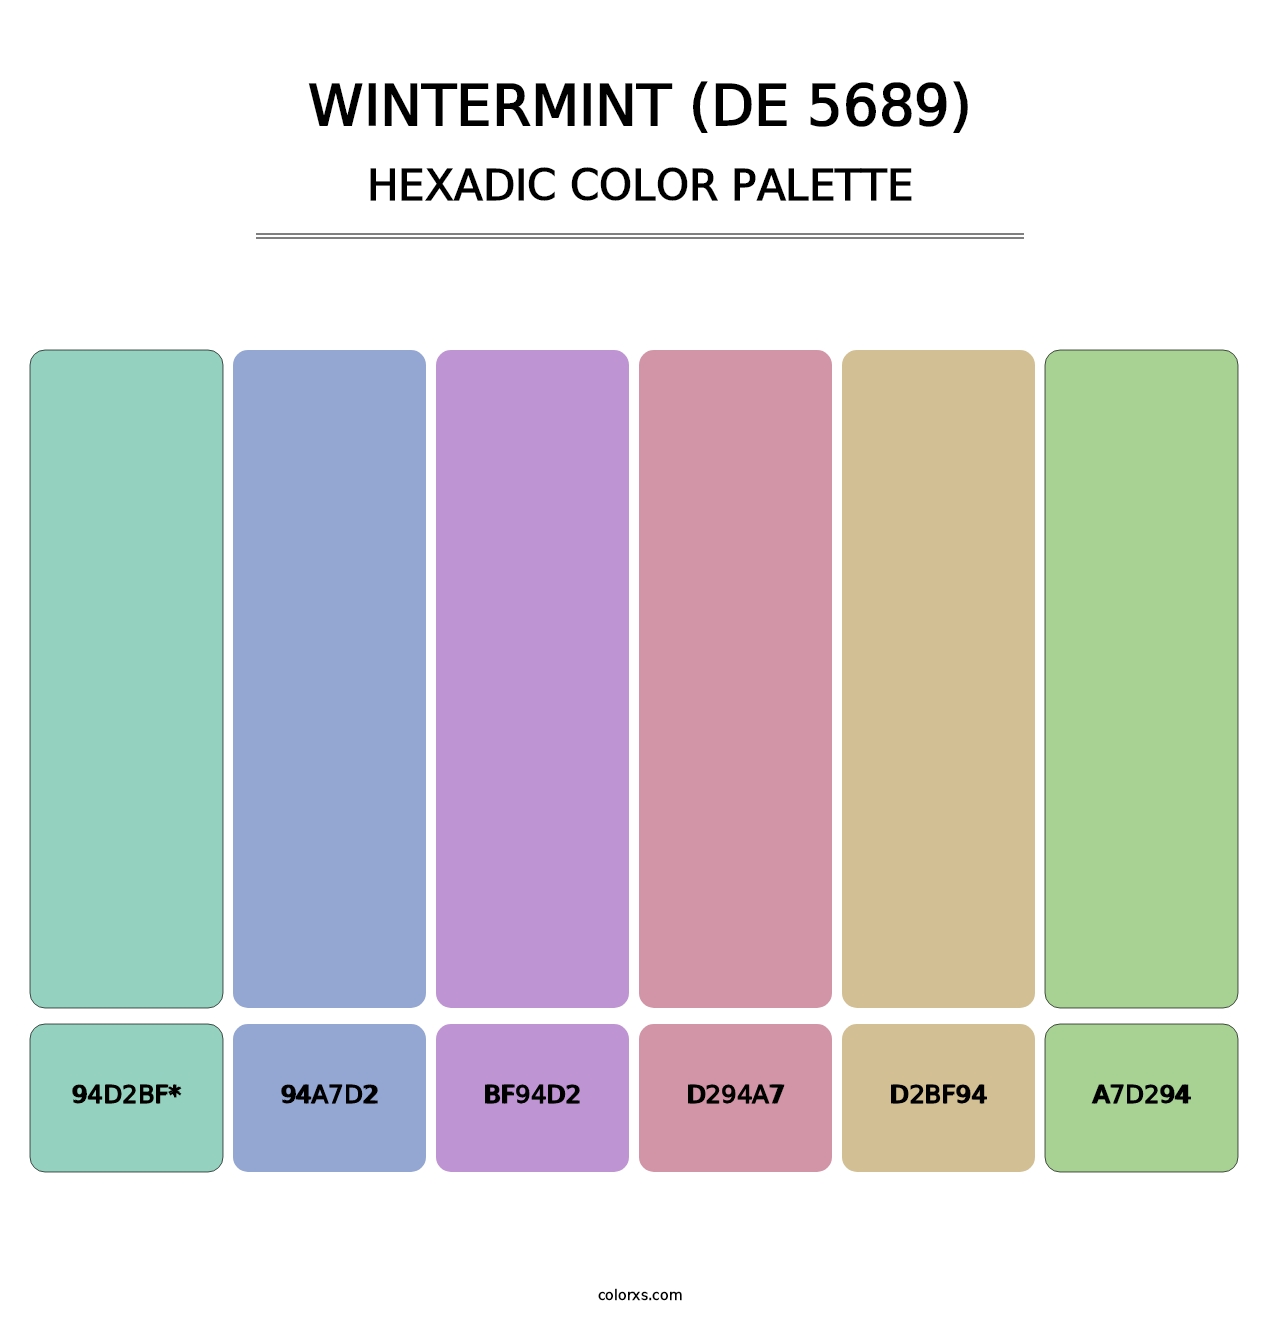 Wintermint (DE 5689) - Hexadic Color Palette